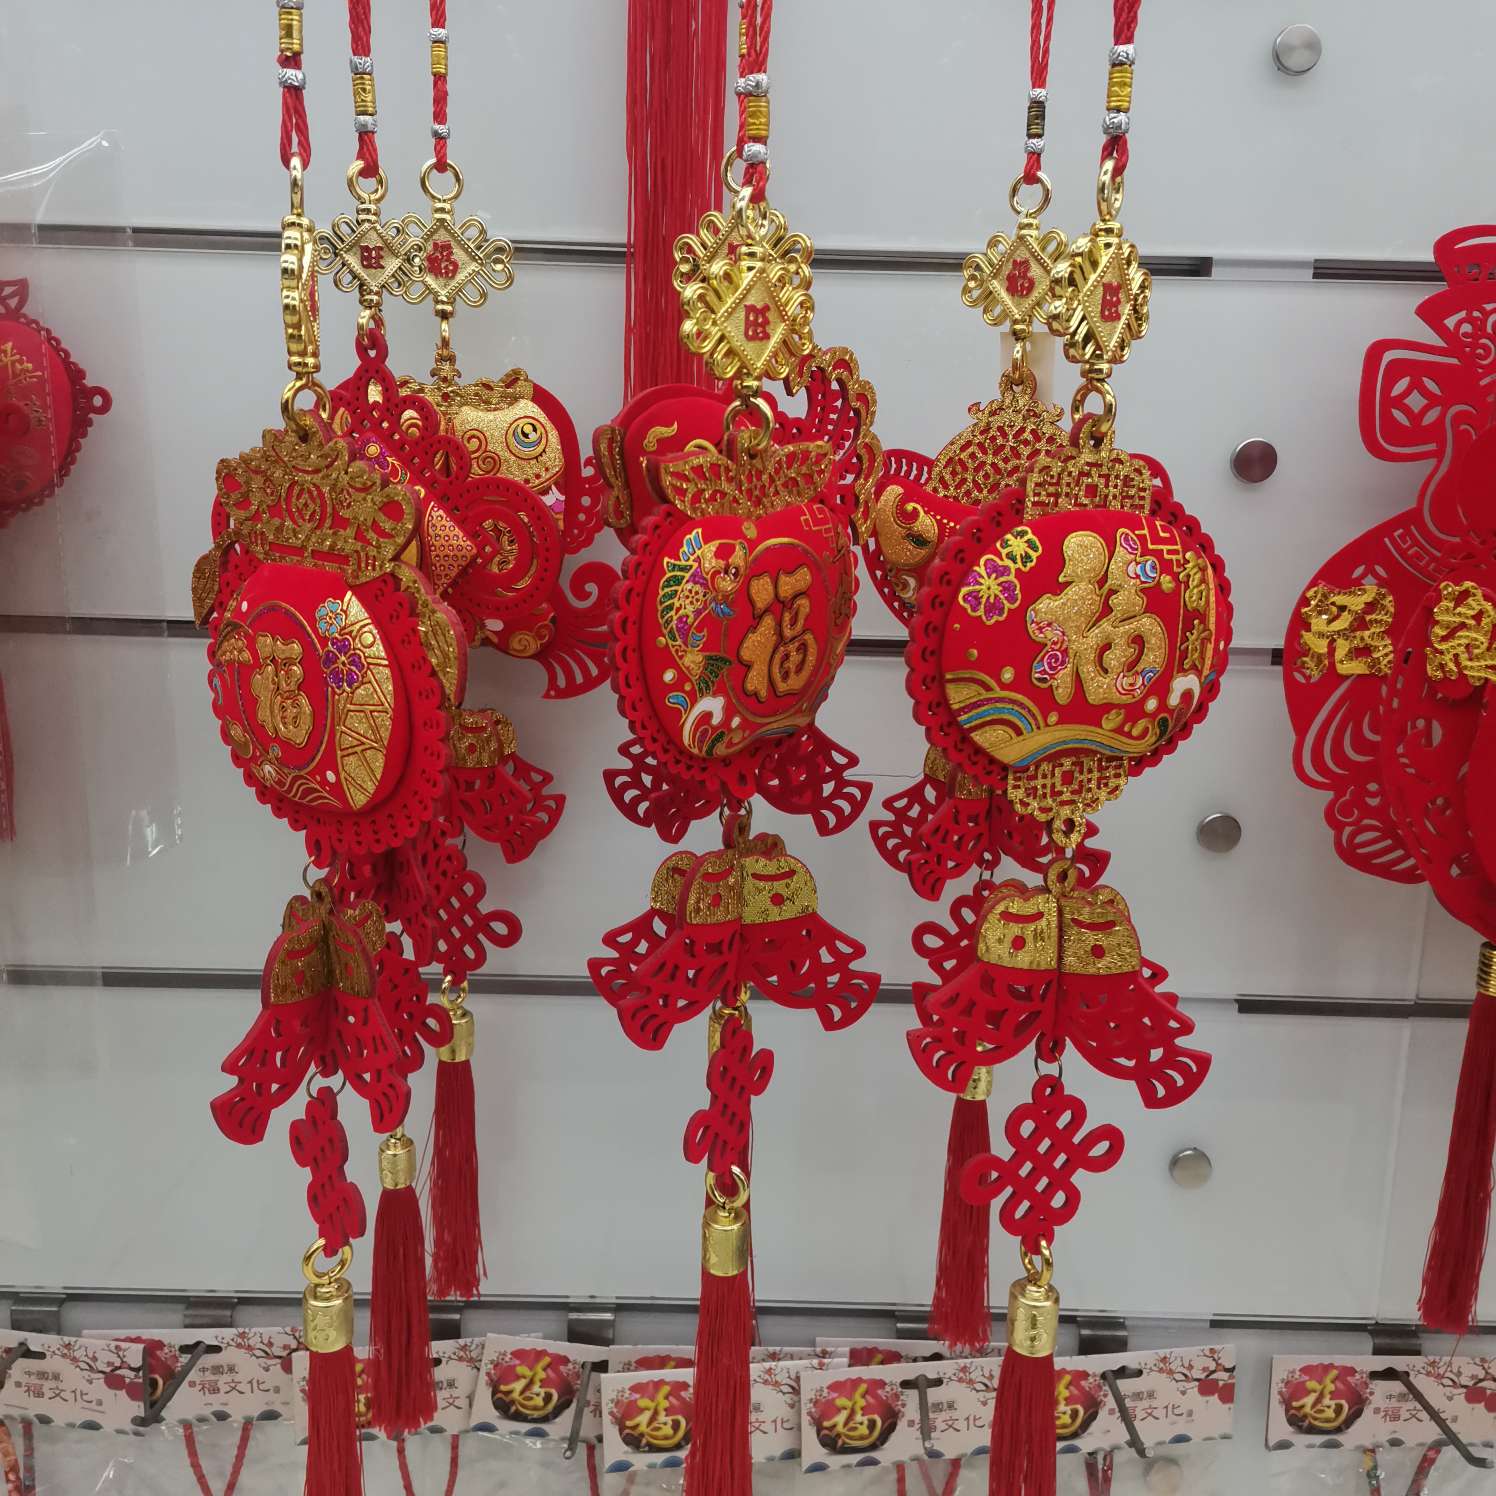 中国结福字厂家直销客厅装饰新款年货特色工艺品礼品图